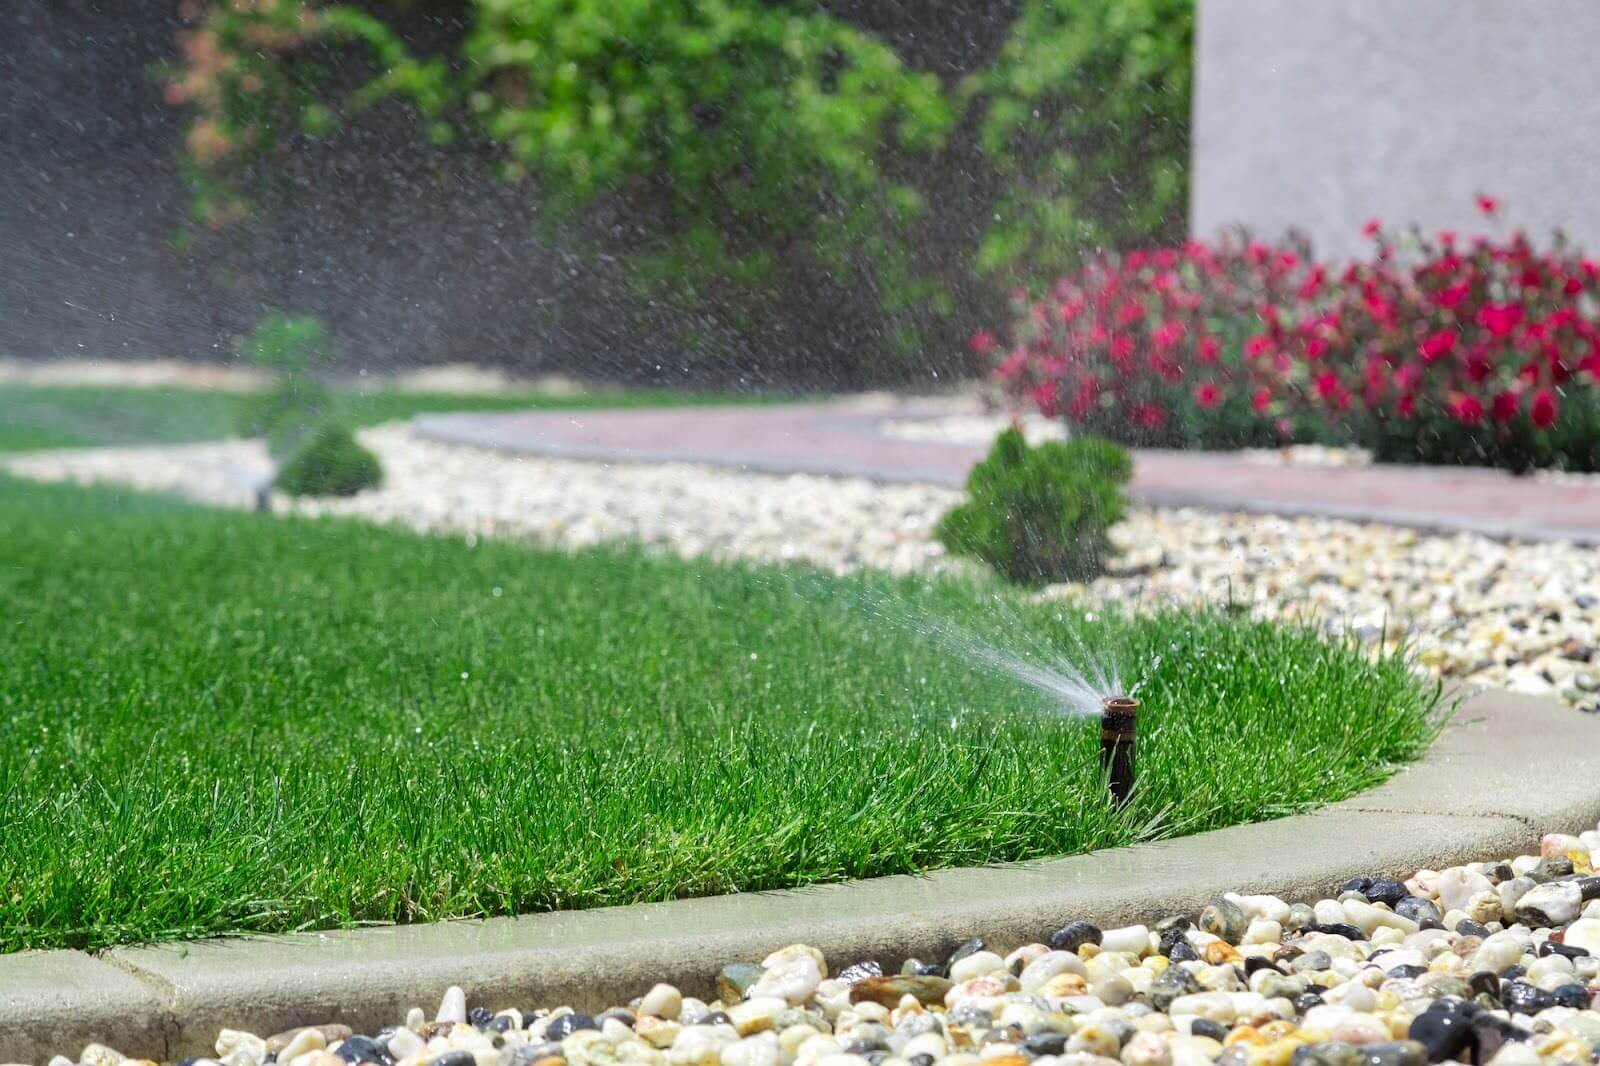 Sprinkler watering a lawn.